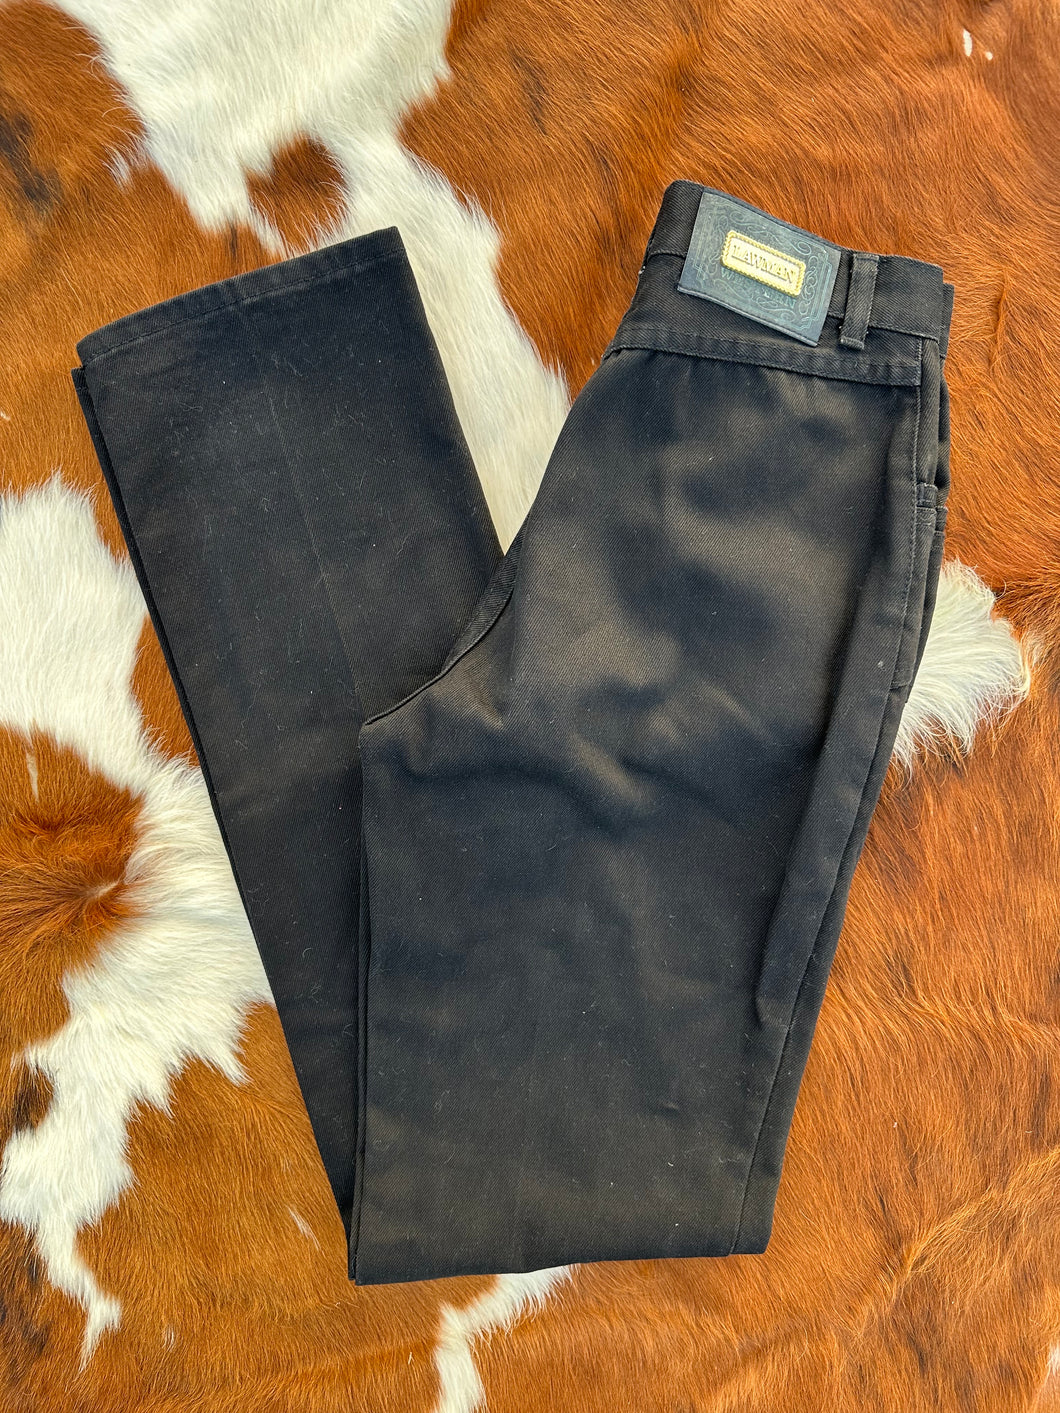 Vintage Black Lawman Jeans